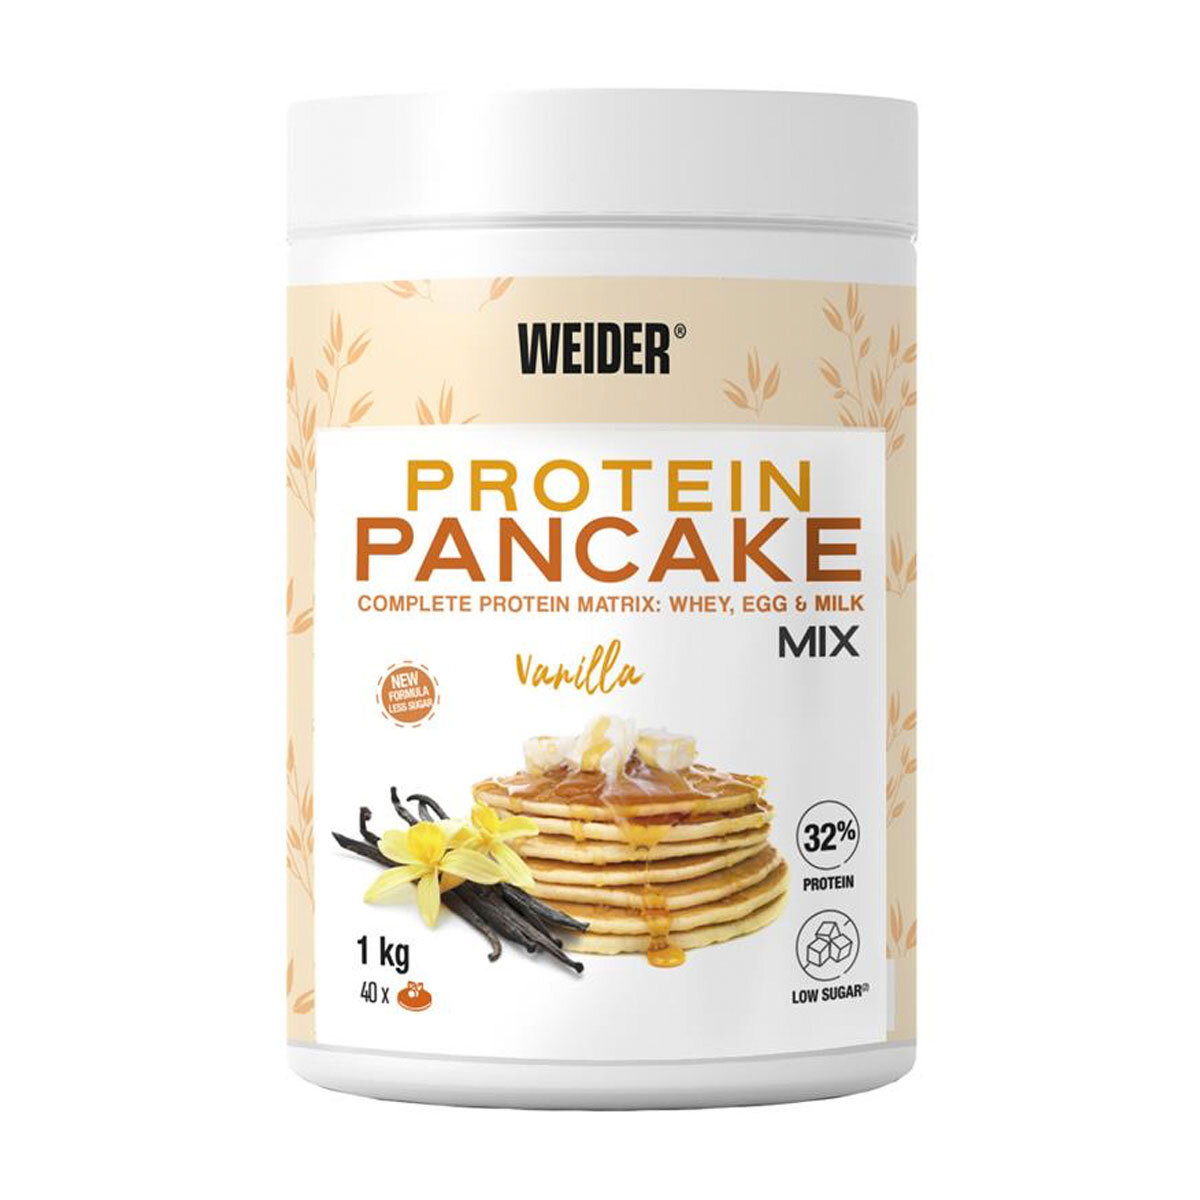 Weider Protein Pancake Mix in Vanilla, 1kg | Costco UK